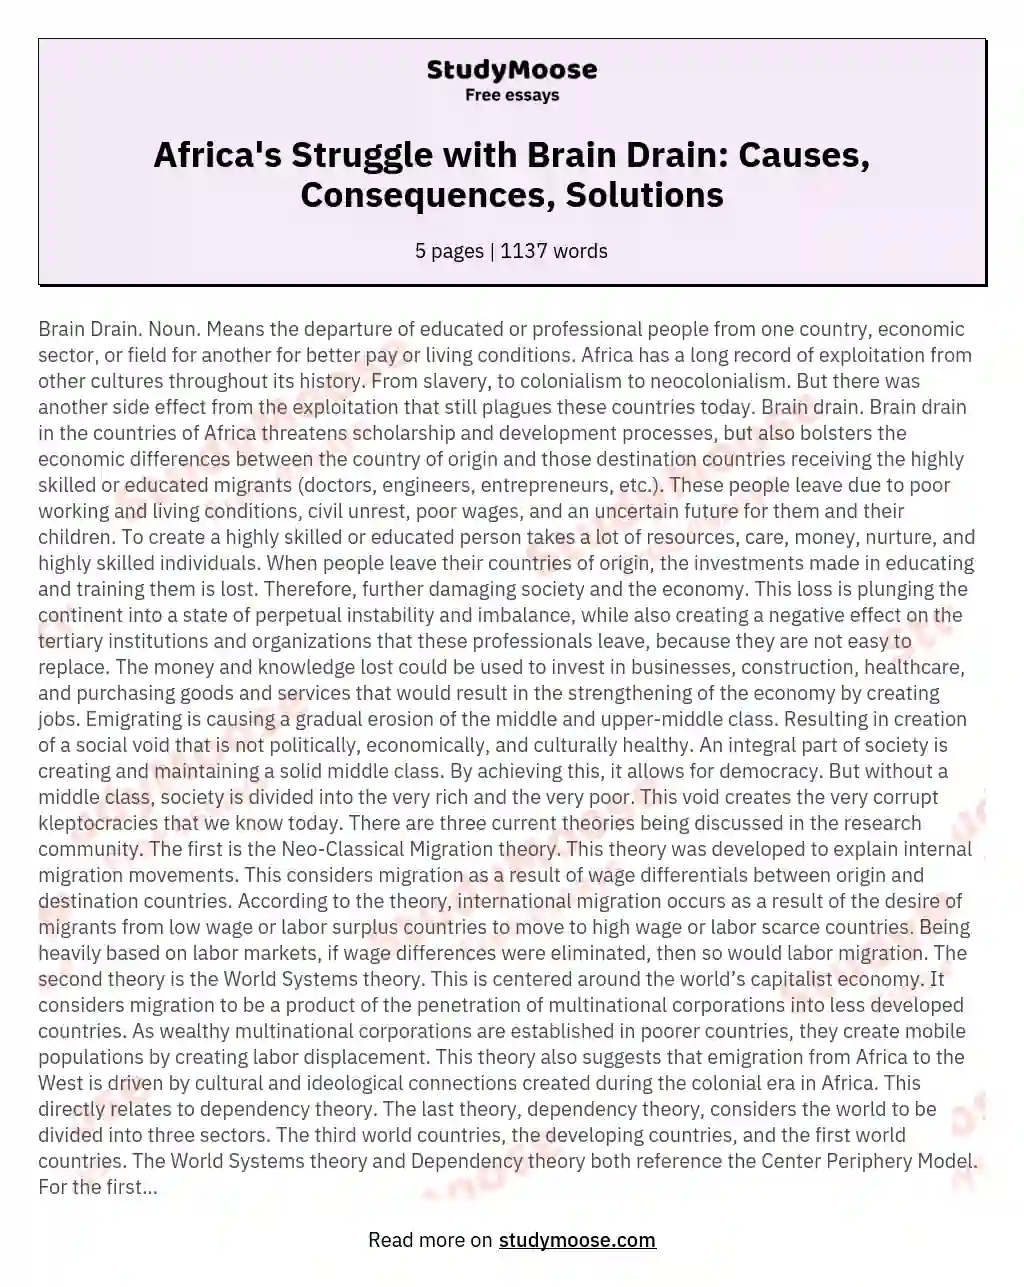 Brain Drain in Africa